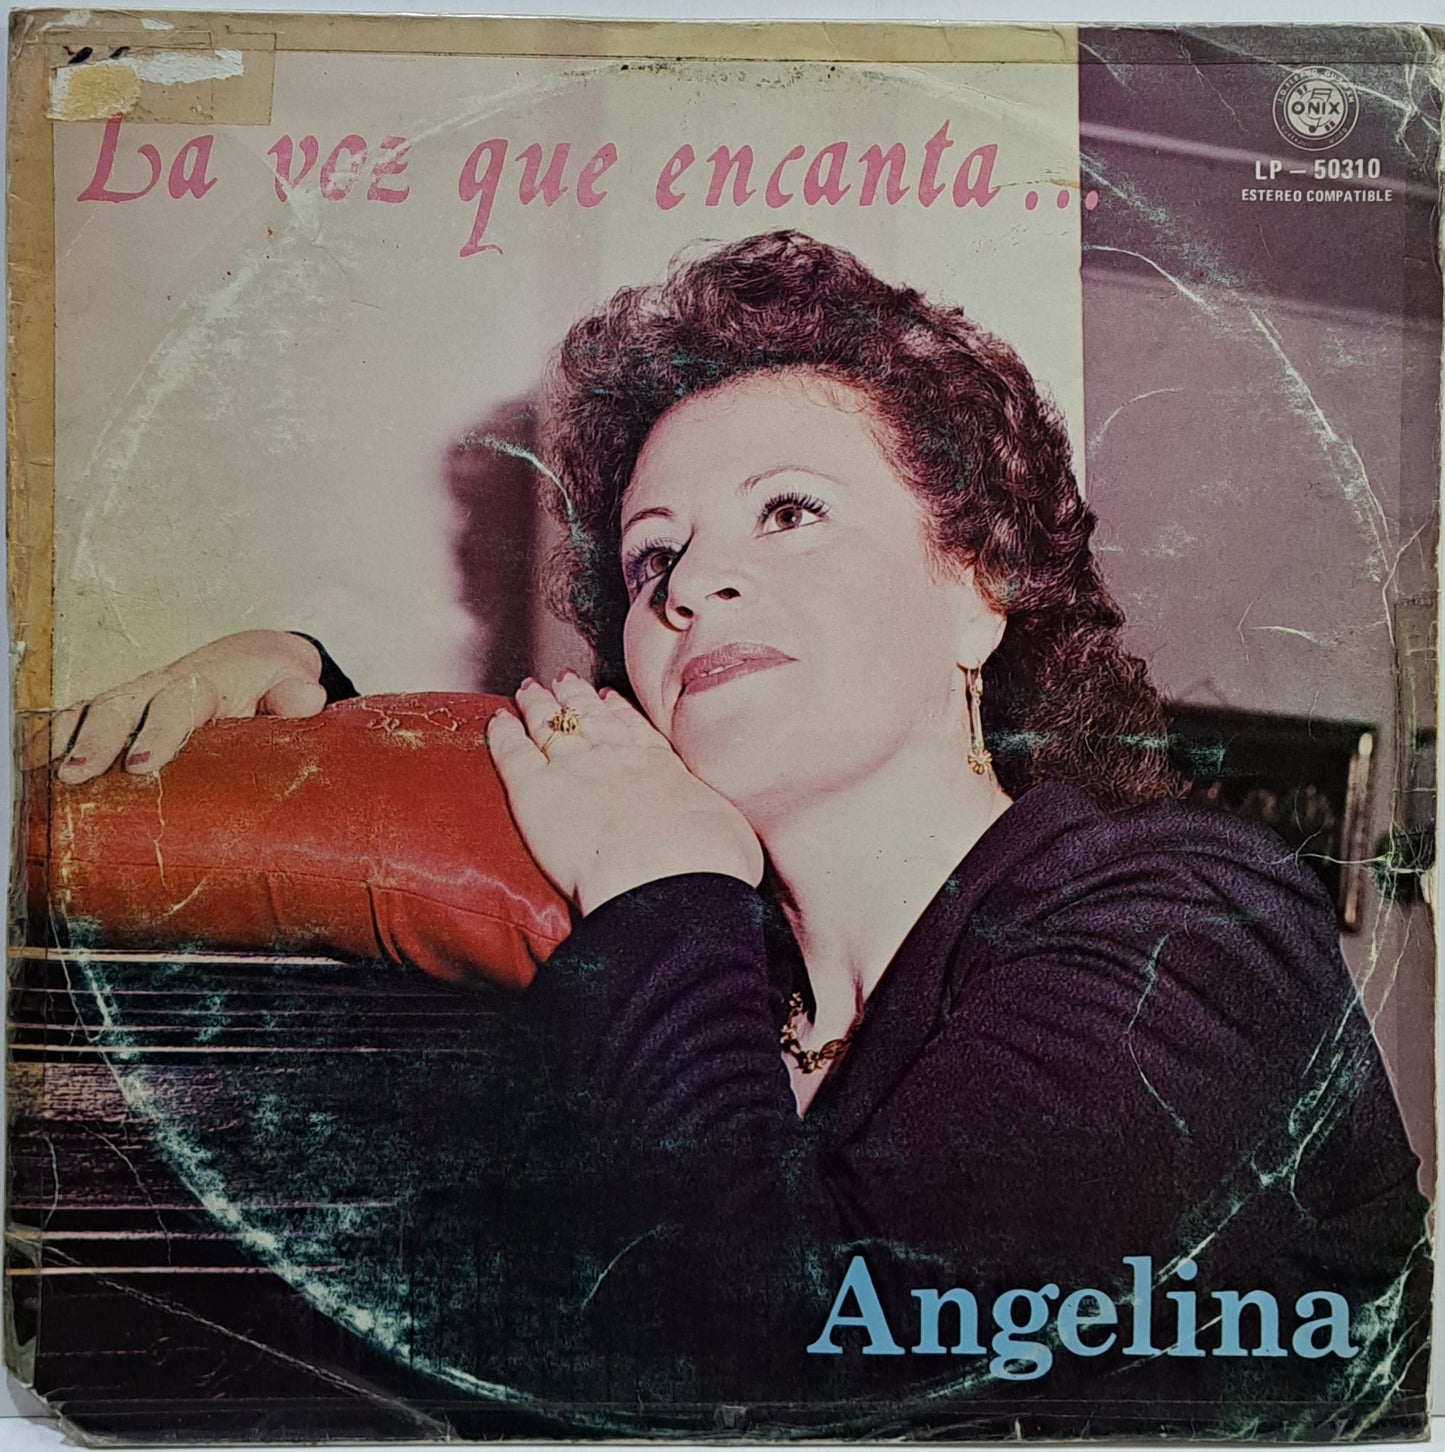 ANGELINA - LA VOZ QUE CANTA  LP